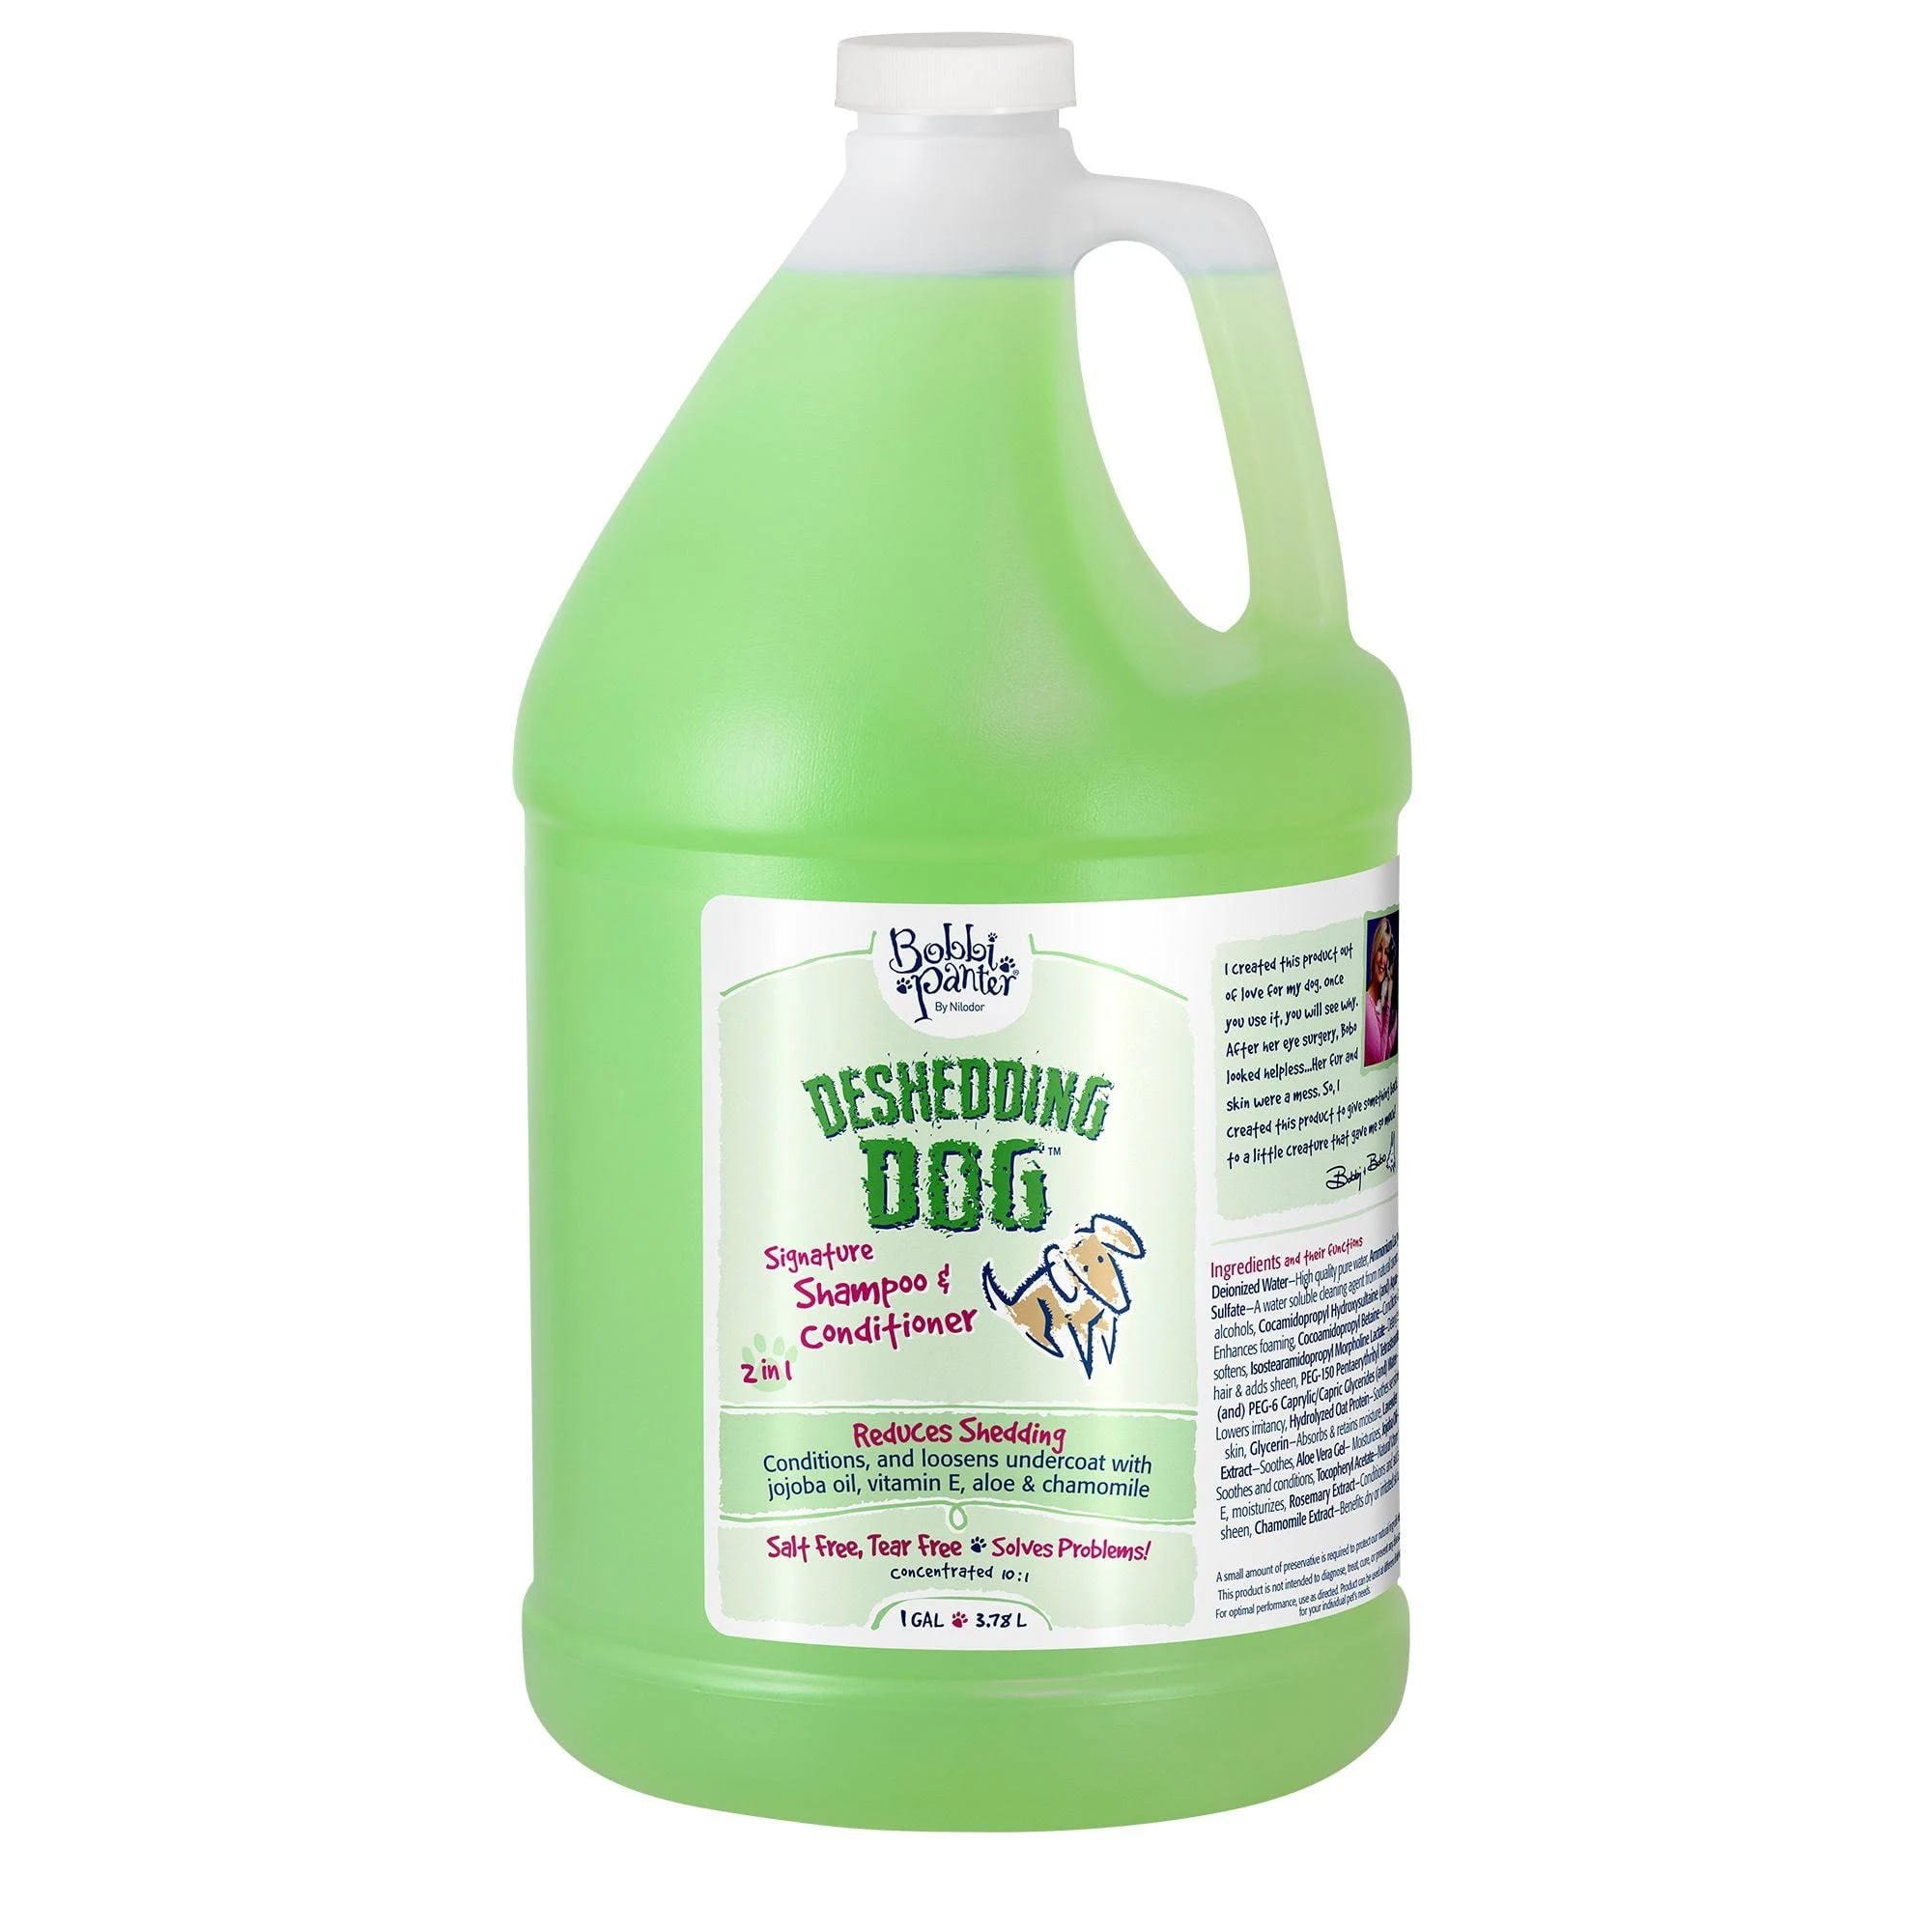 Bobbi Panter Advanced Deshedding Shampoo & Conditioner for Dogs | Image